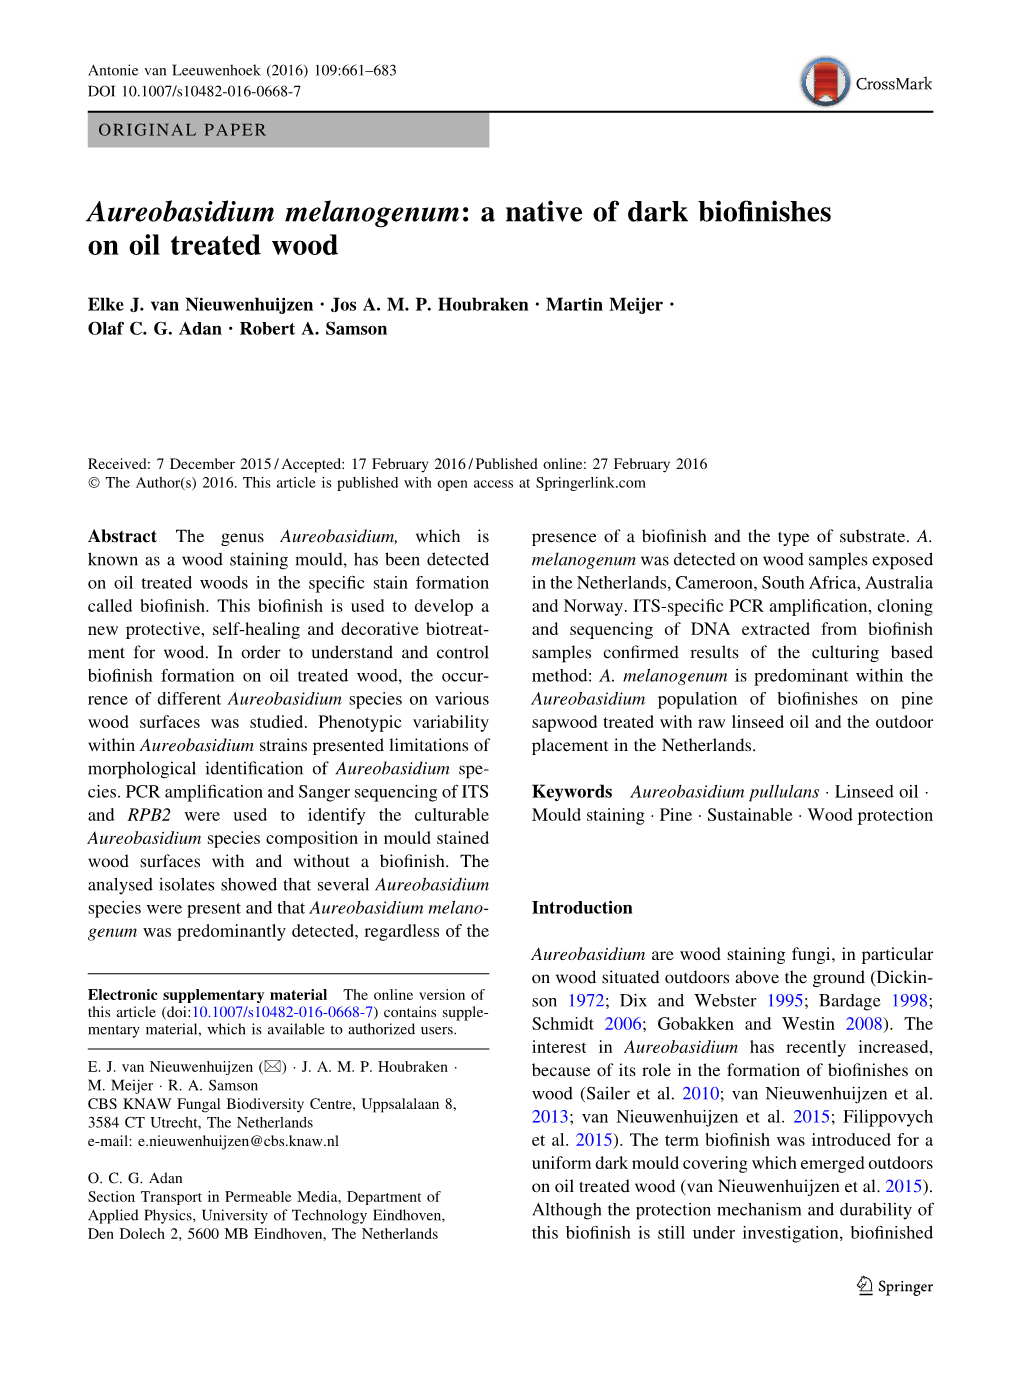 Aureobasidium Melanogenum: a Native of Dark Bioﬁnishes on Oil Treated Wood